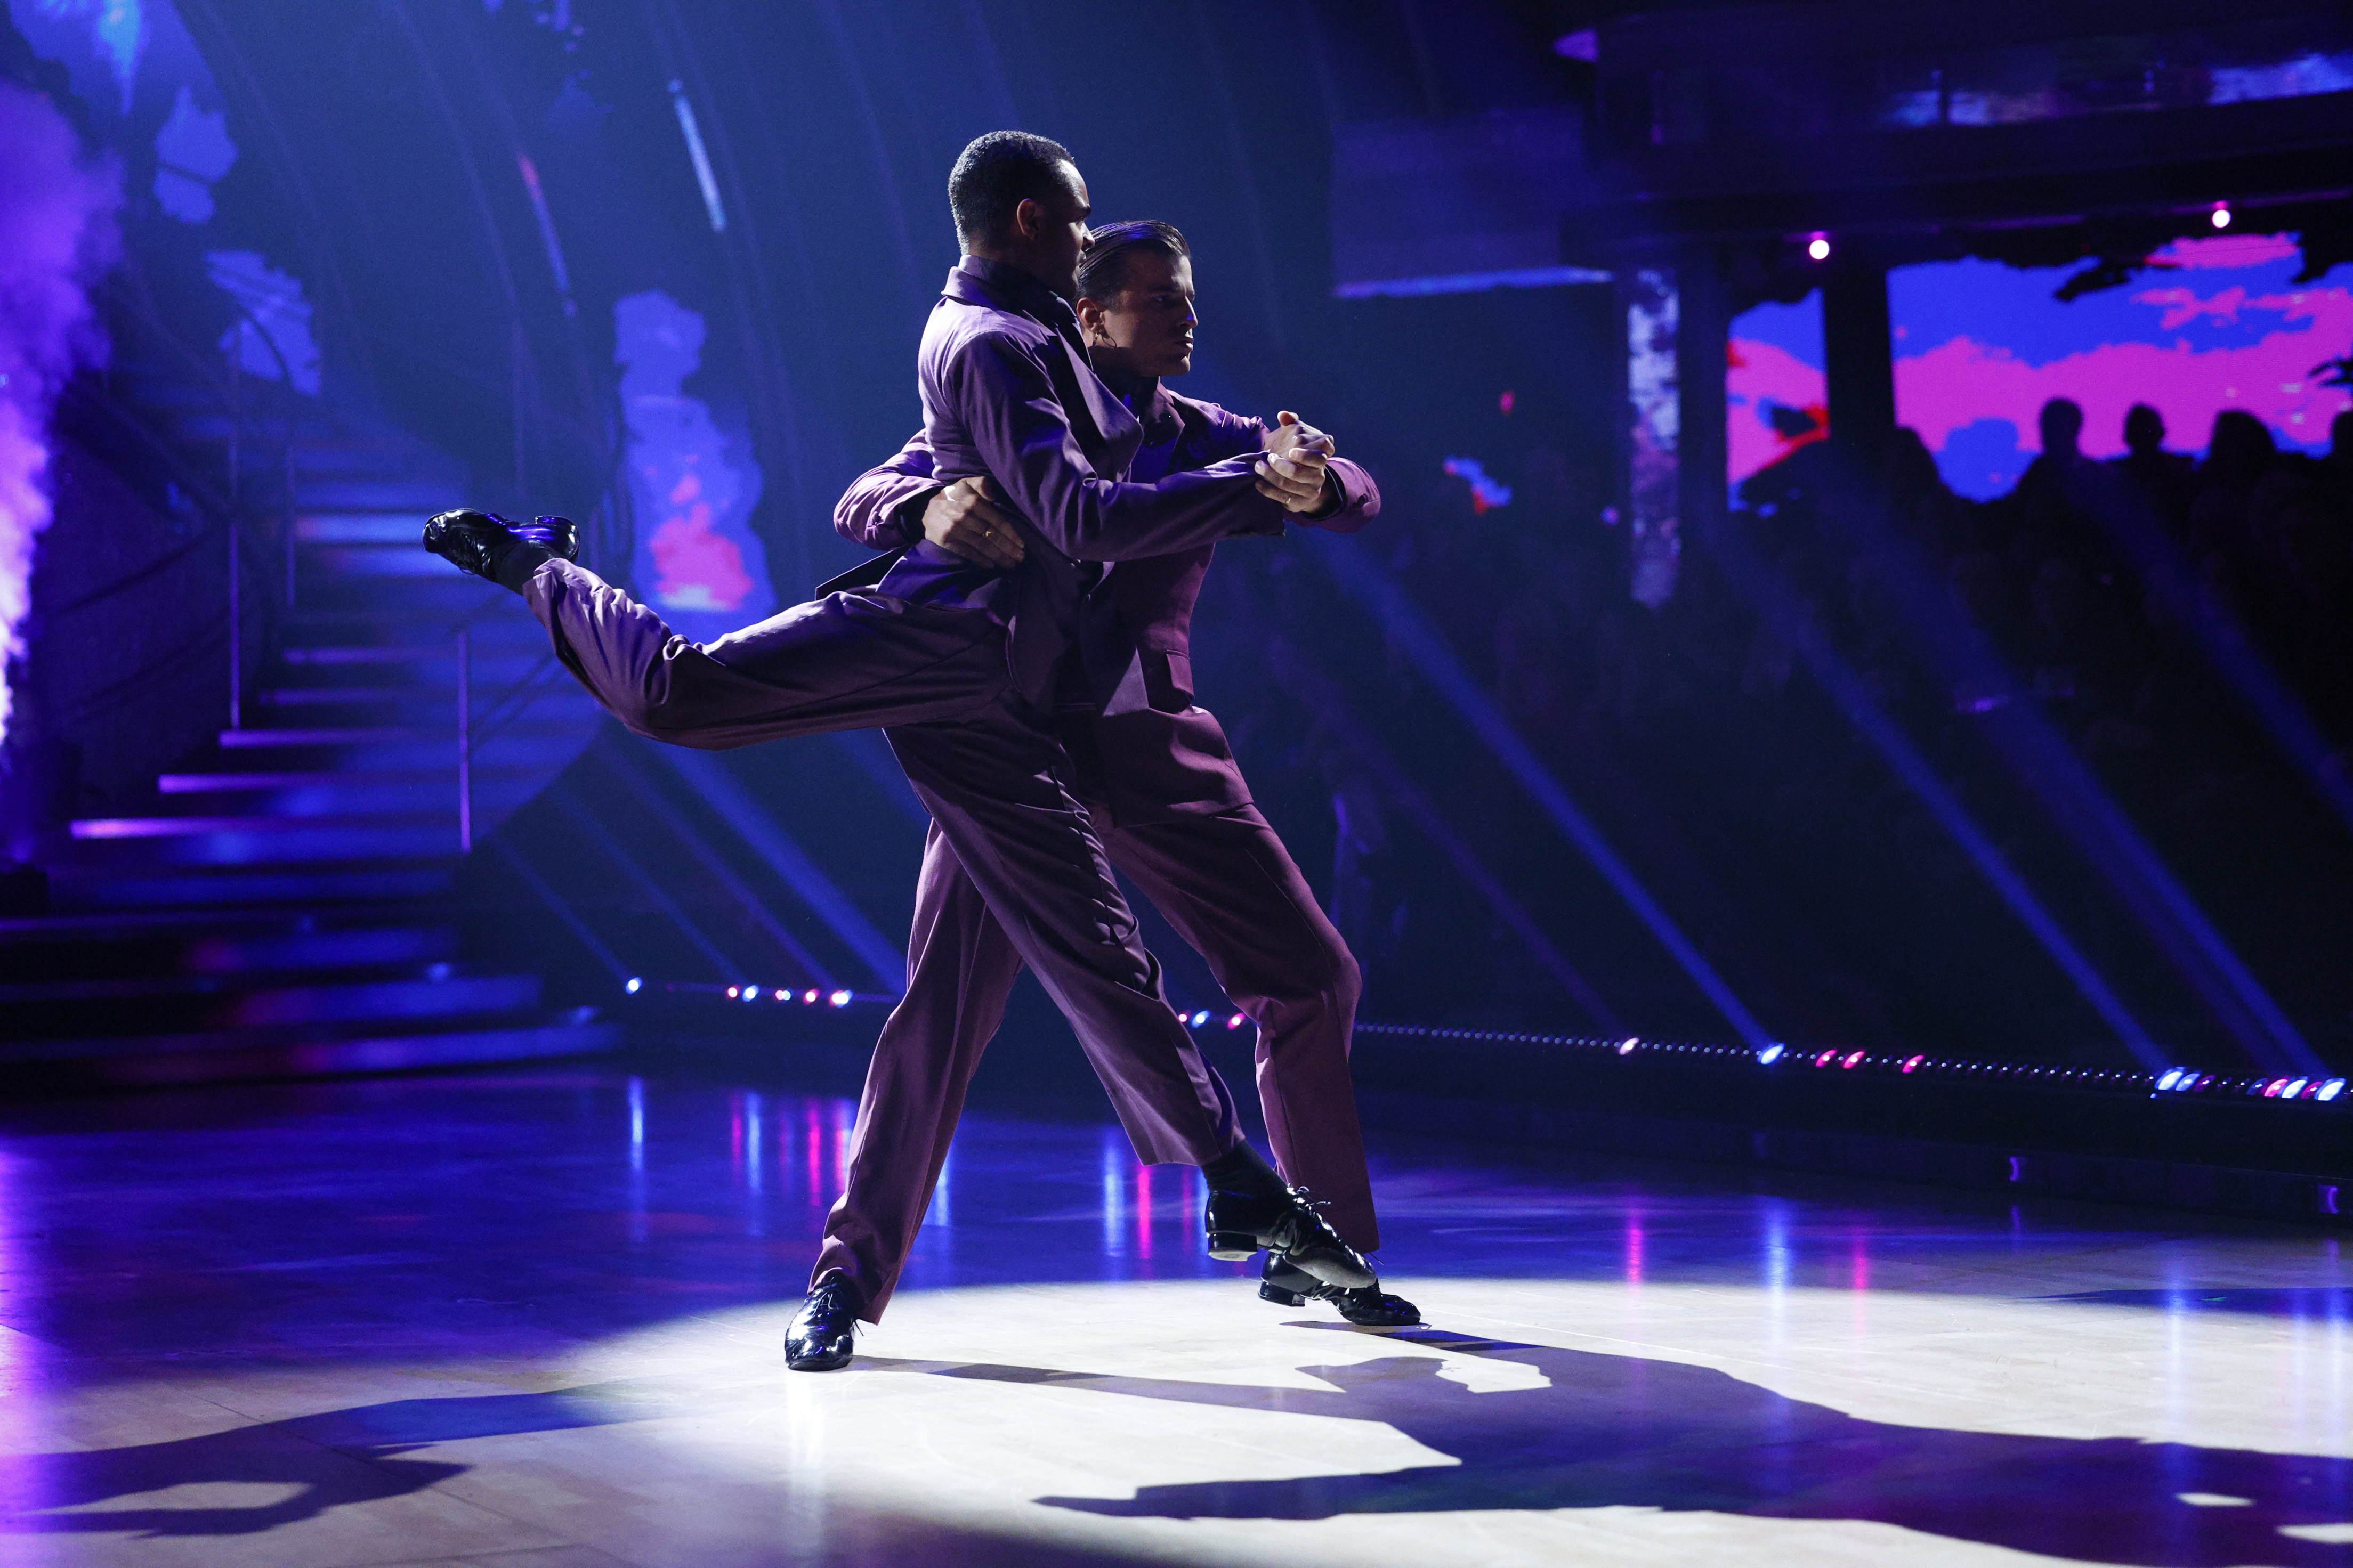 Der argentinische Tango von Layton Williams mit Partner Nikita Kuzmin bei Strictly erhielt zu Recht eine nahezu perfekte Bewertung